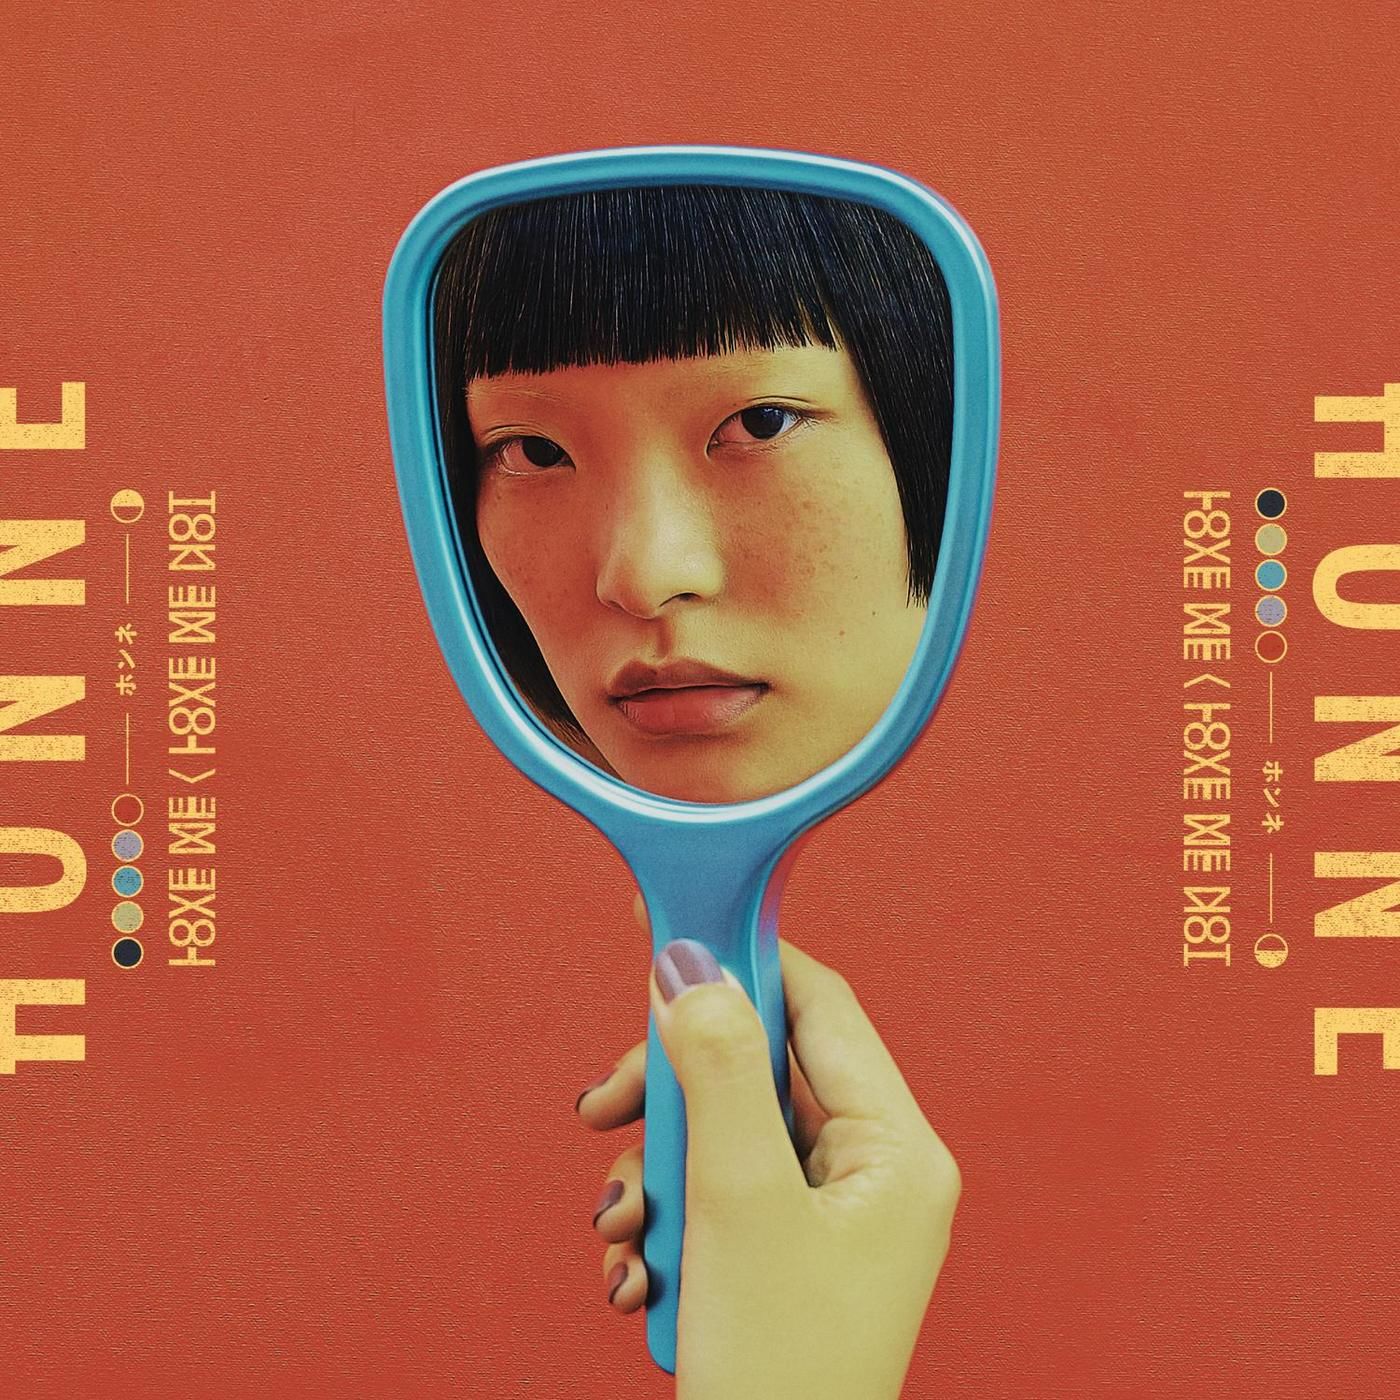 HONNE - Forget Me Not ◐ (Instrumental) (잔잔, 신비, 비트)